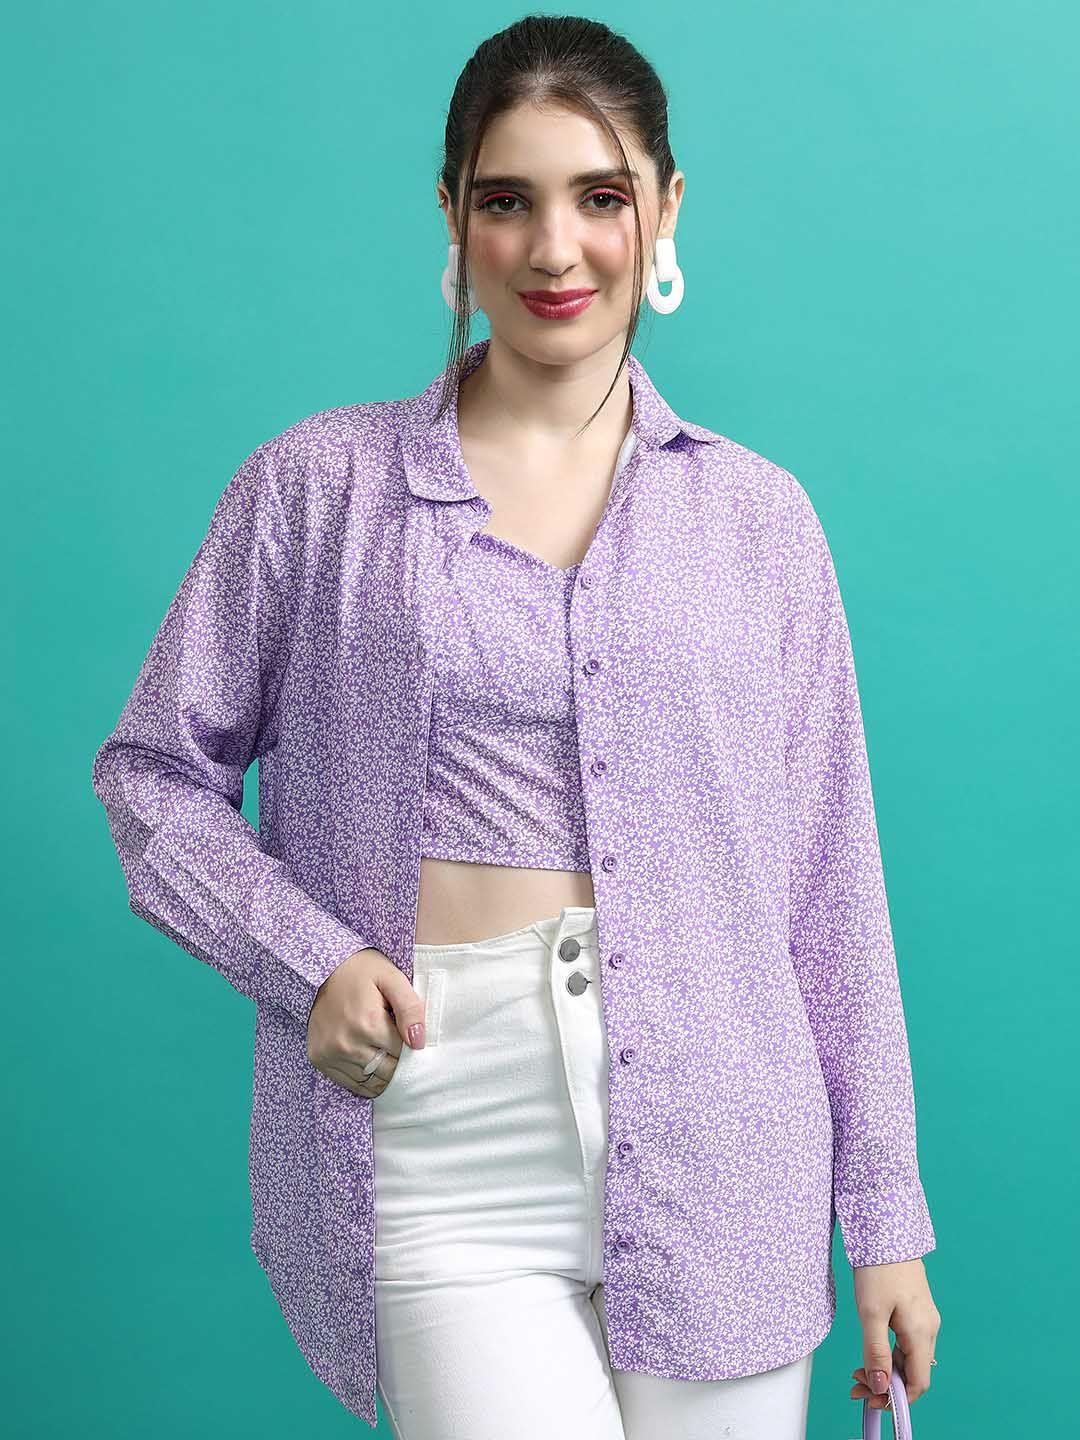 tokyo talkies purple floral printed shirt style top